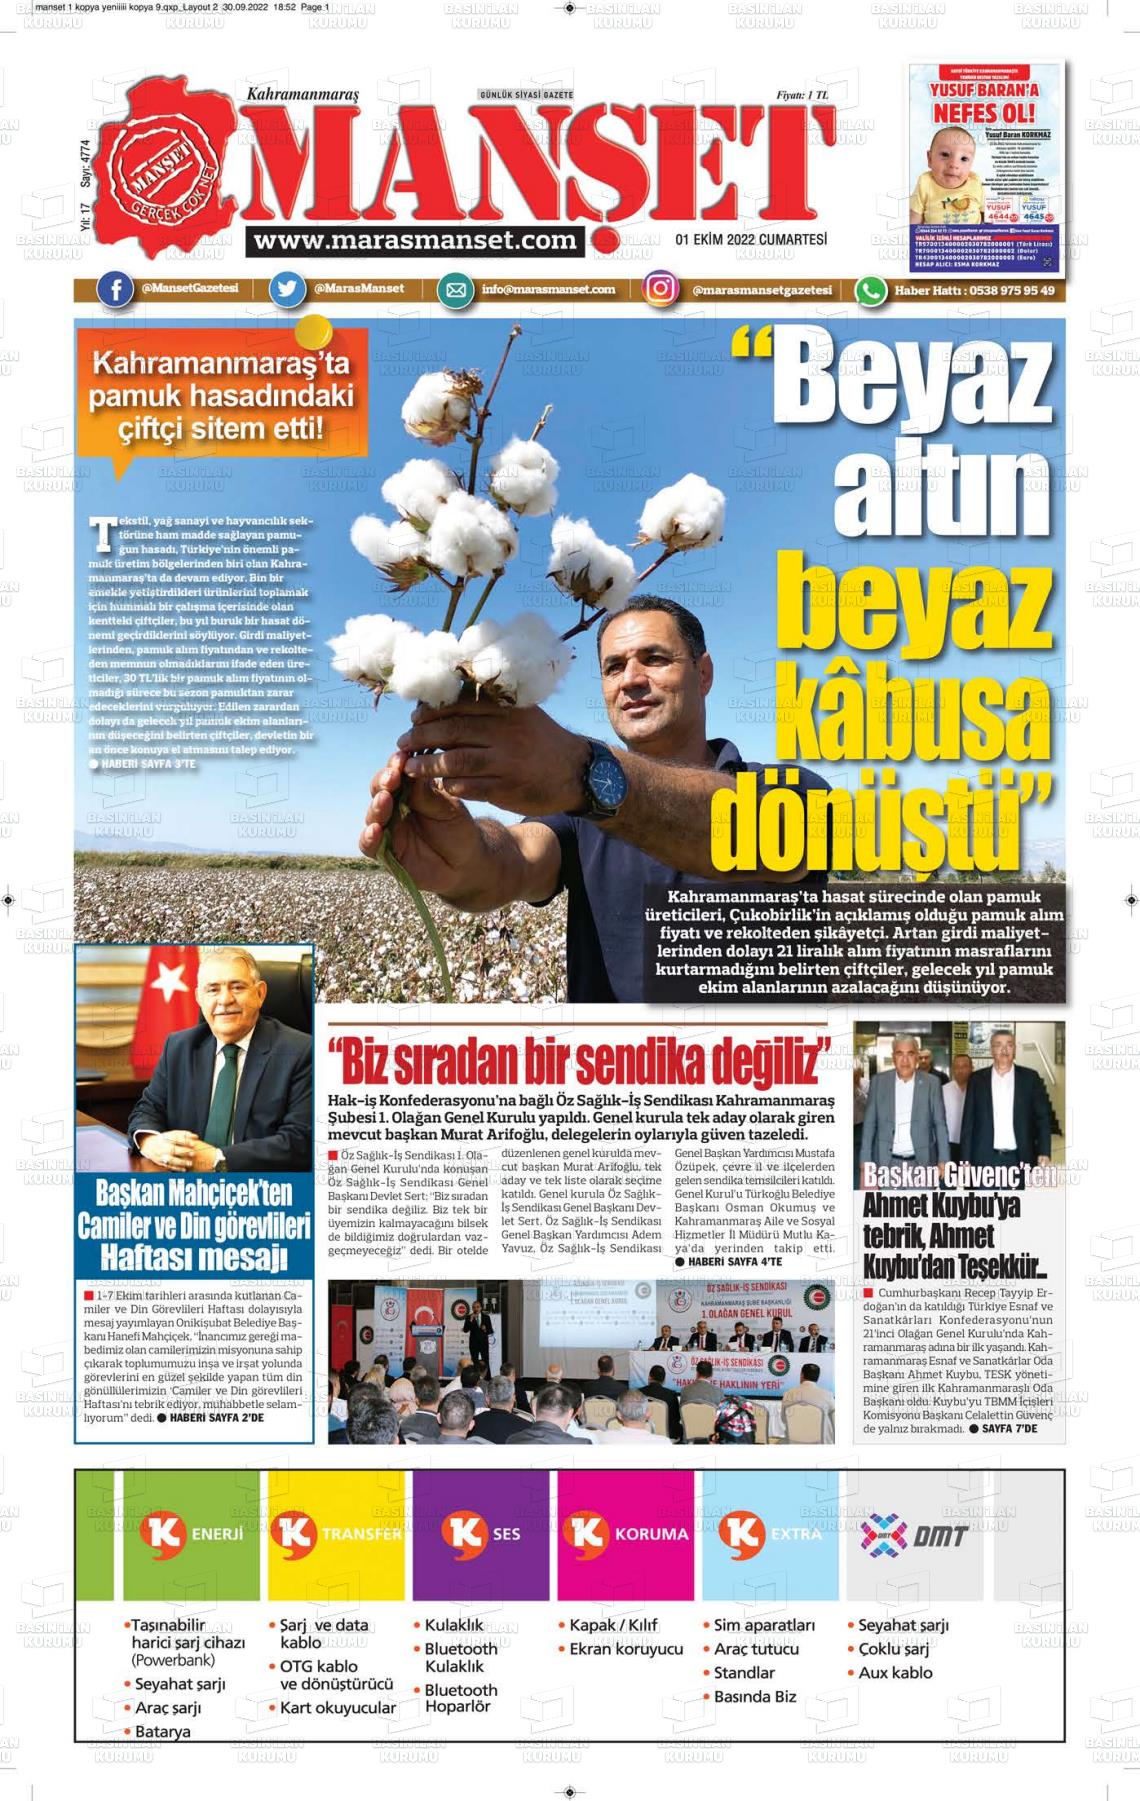 01 Ekim 2022 Manşet Gazete Manşeti